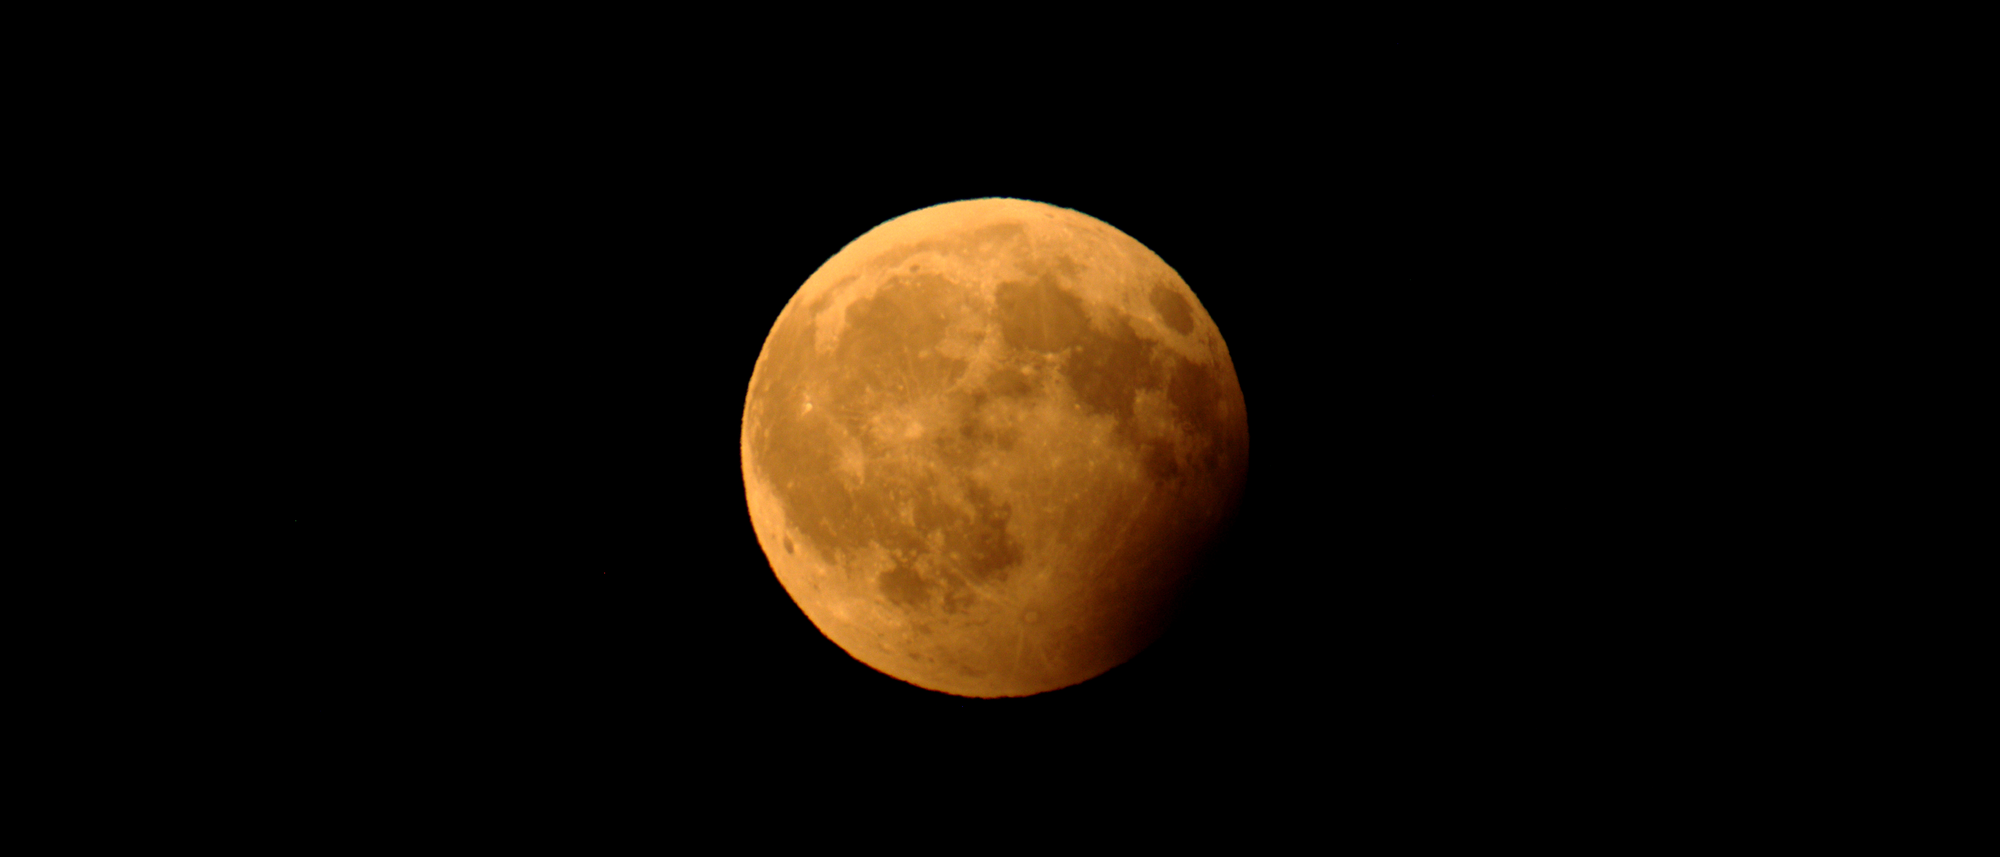 Foto des Mondes während einer partiellen Mondfinsternis, bei der ein Teil des Trabanten vom Kernschatten der Erde verdunkelt wird.